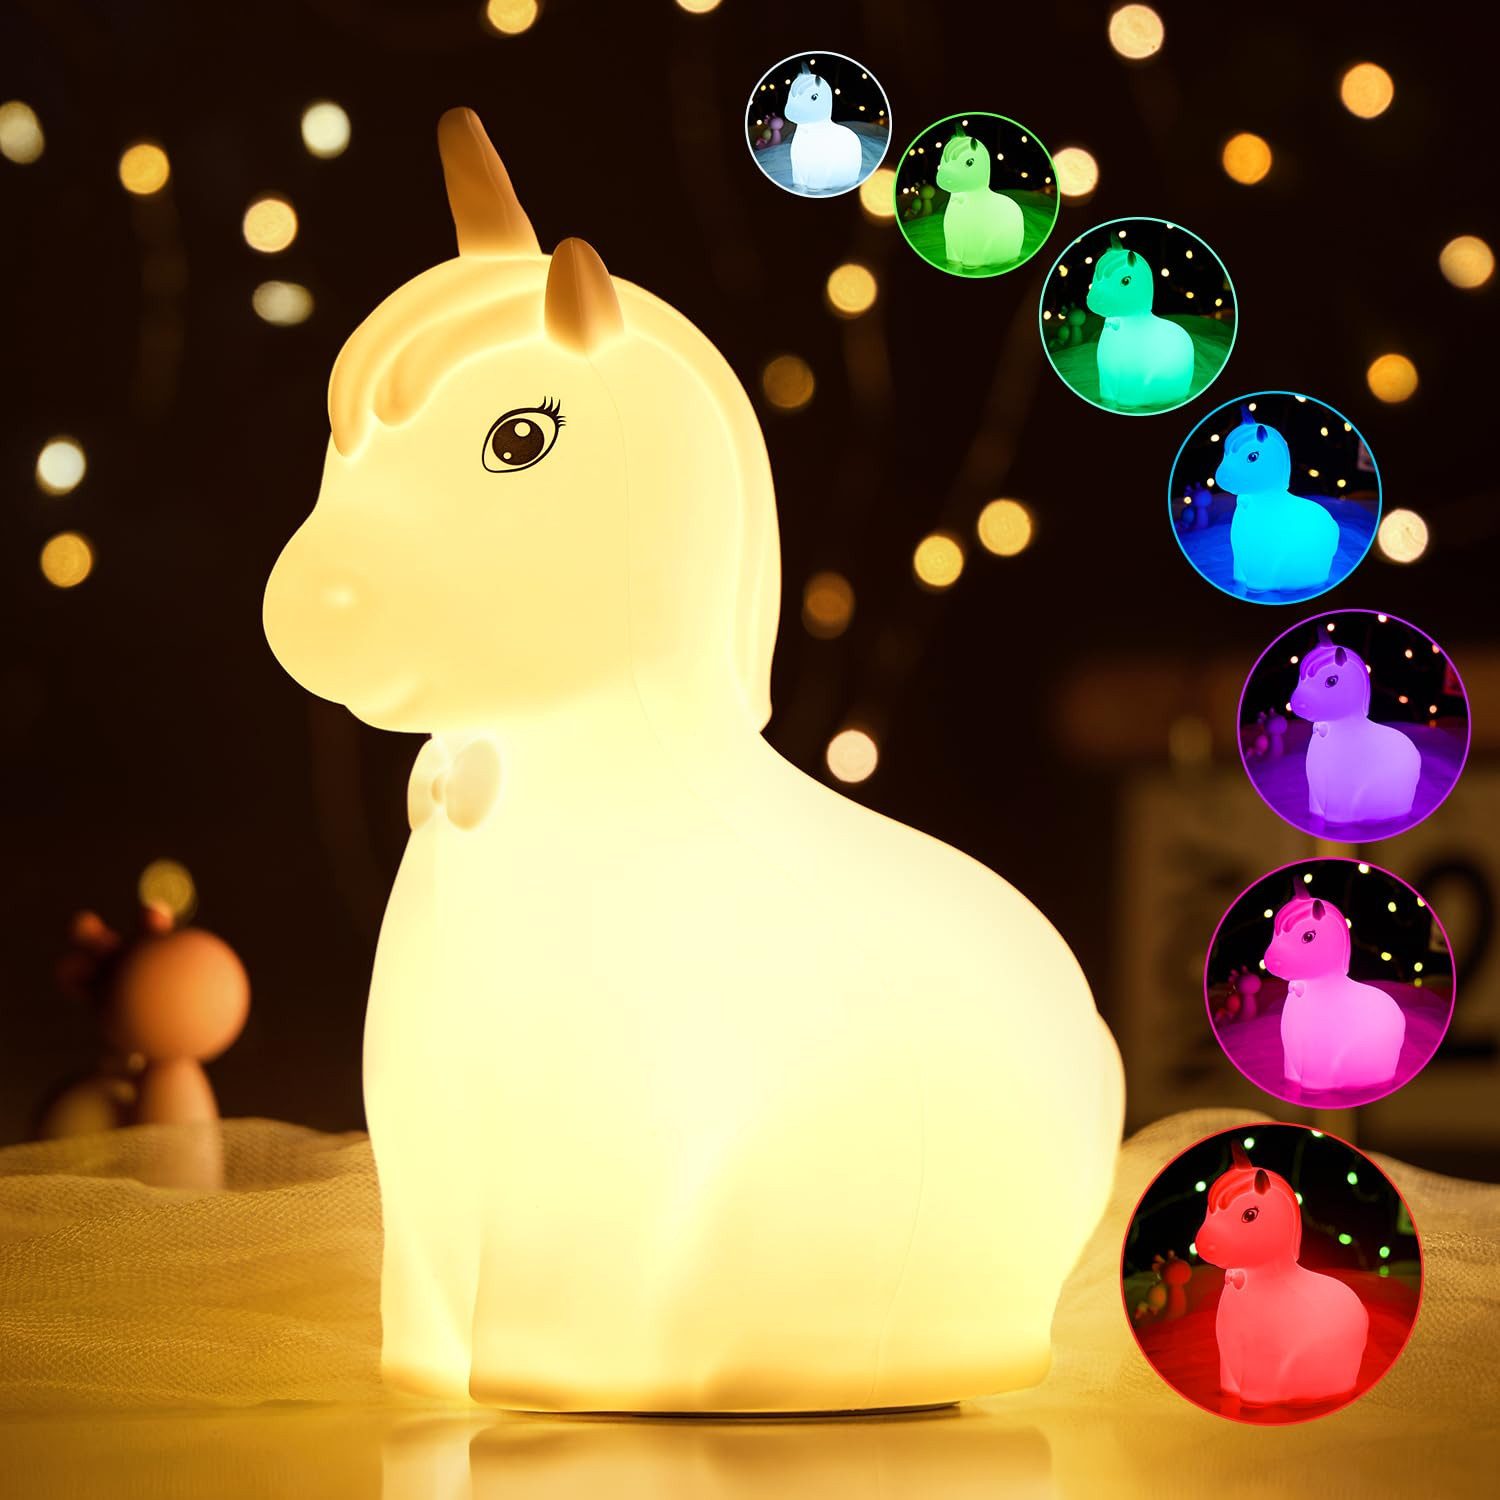 GOOLOO LED Nachtlicht Einhorn Silikon Nachtlicht Baby,7 Farben DimmbarTouch, Dimmbar,Tap-Control, RGB Farben Sicher für Kinder, Mehrfarbiges Licht